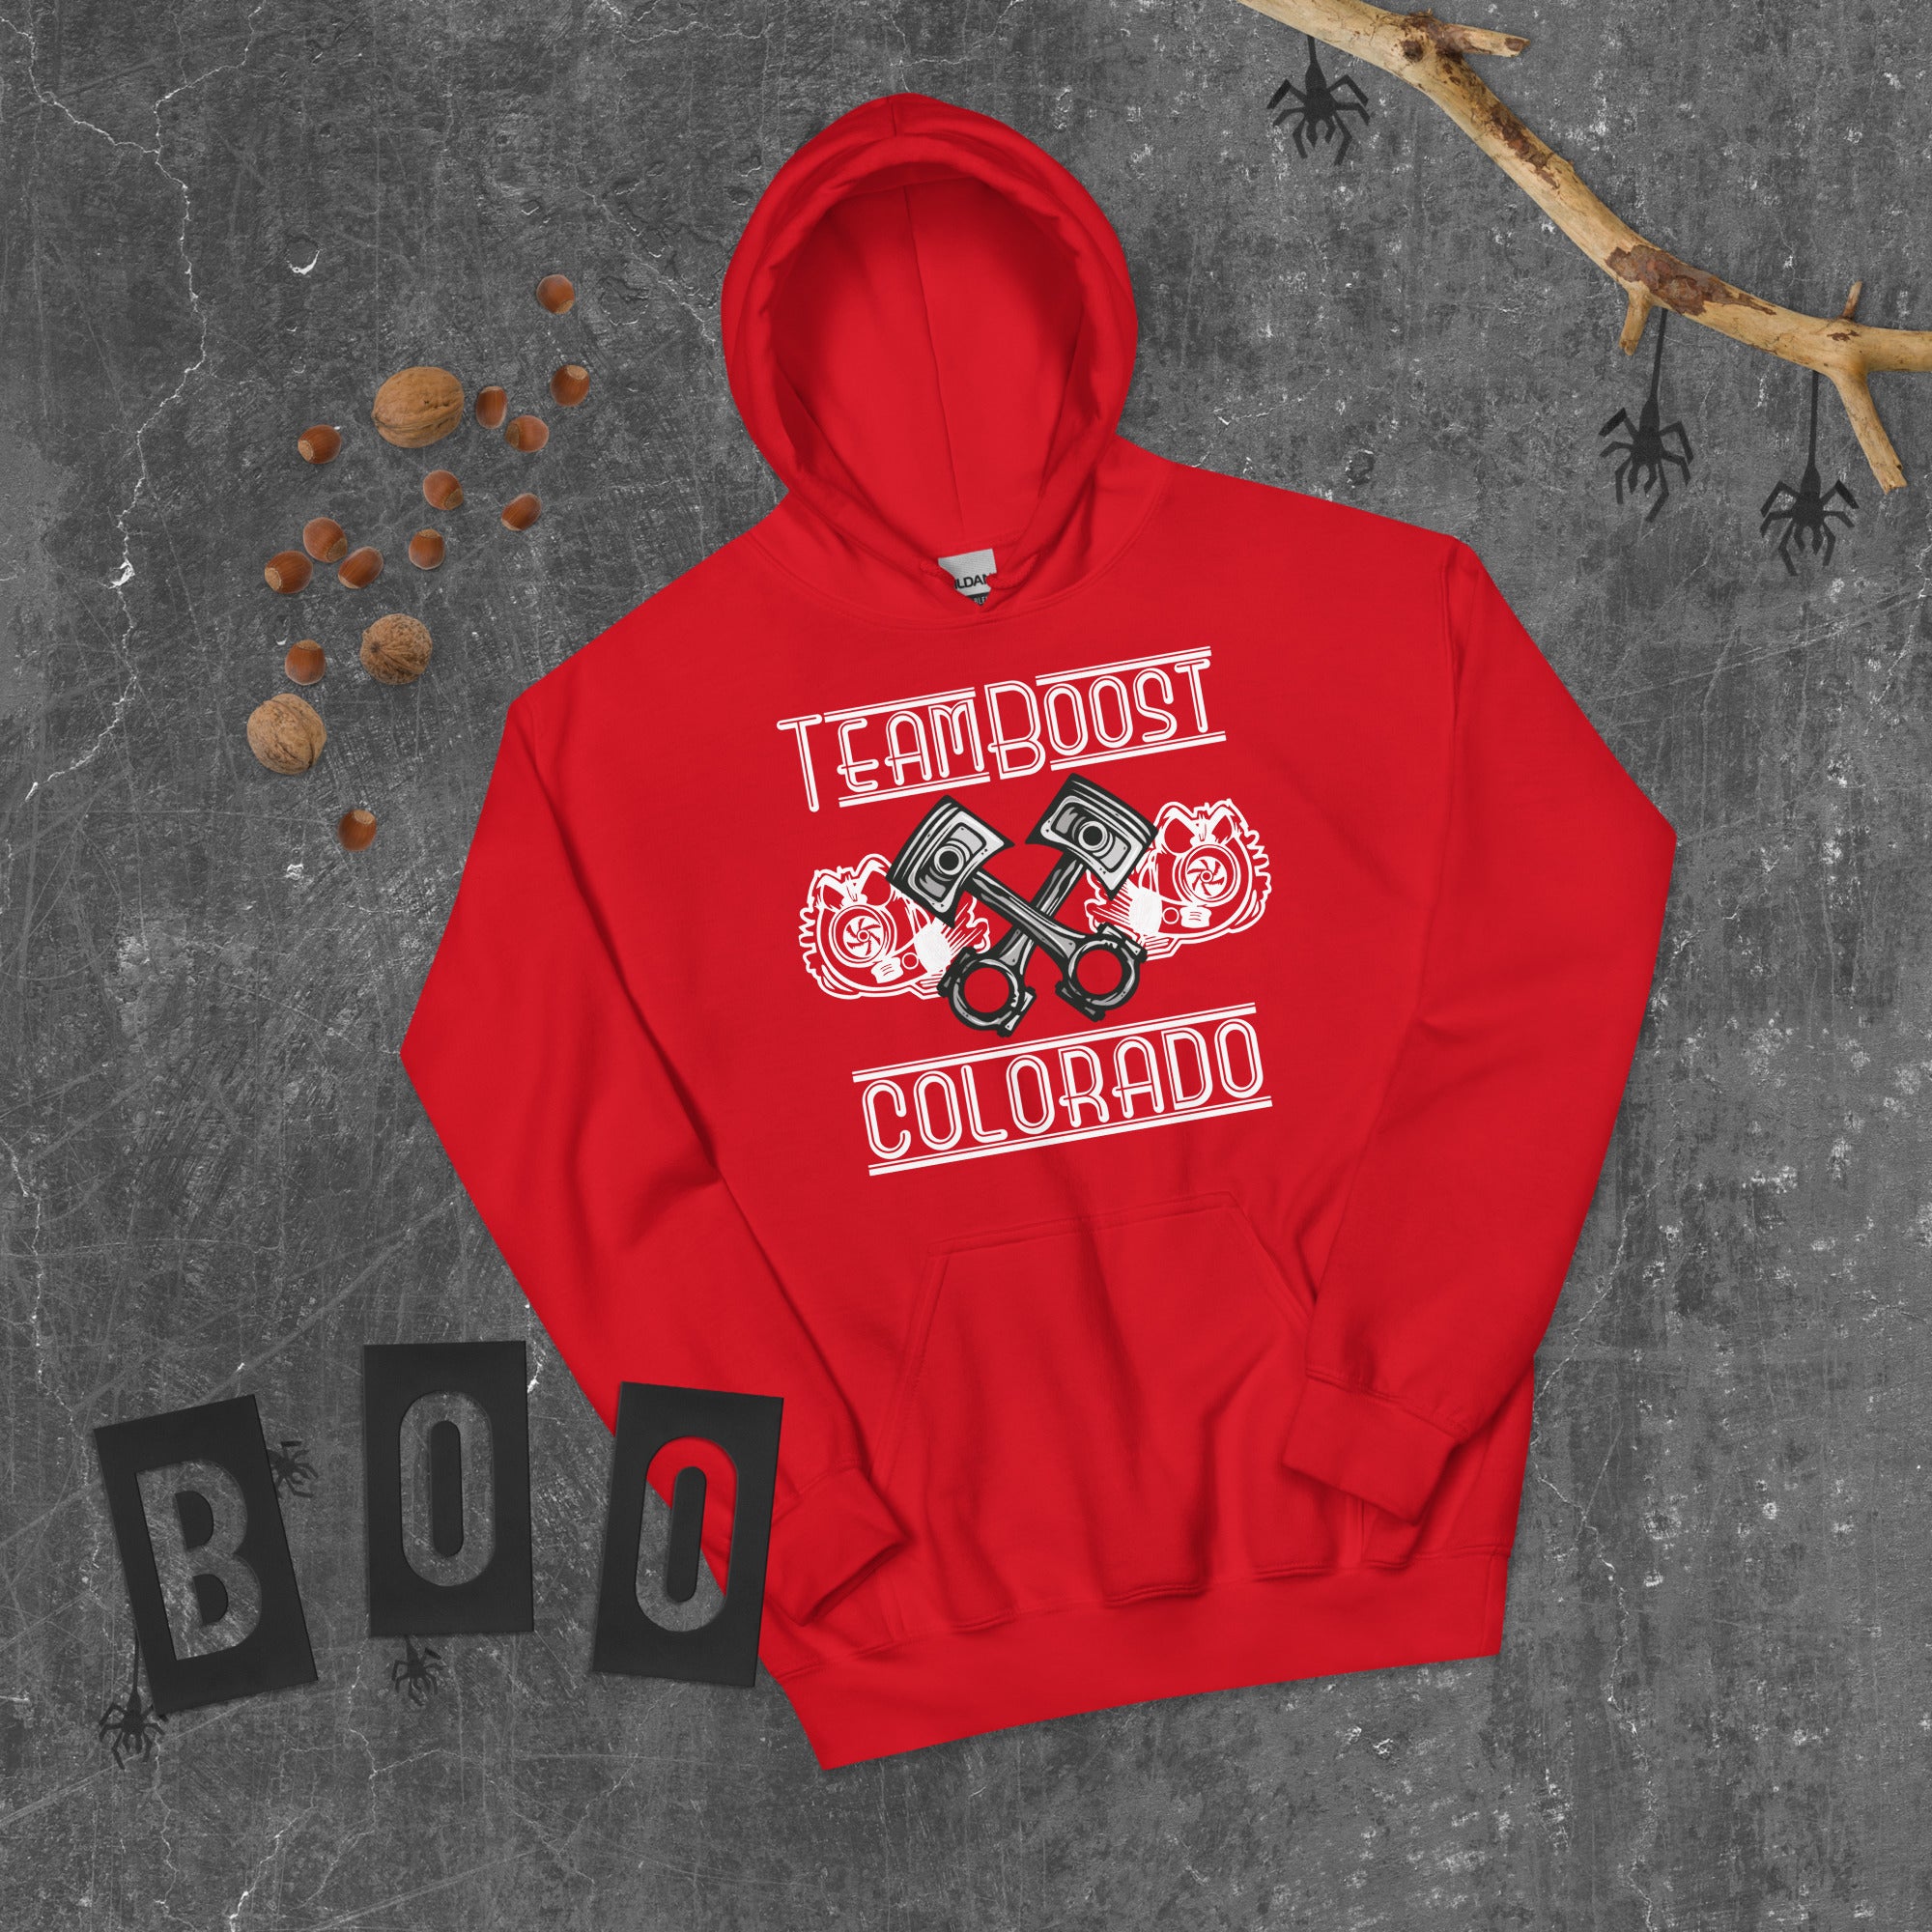 TeamBOOST Colorado hoodie